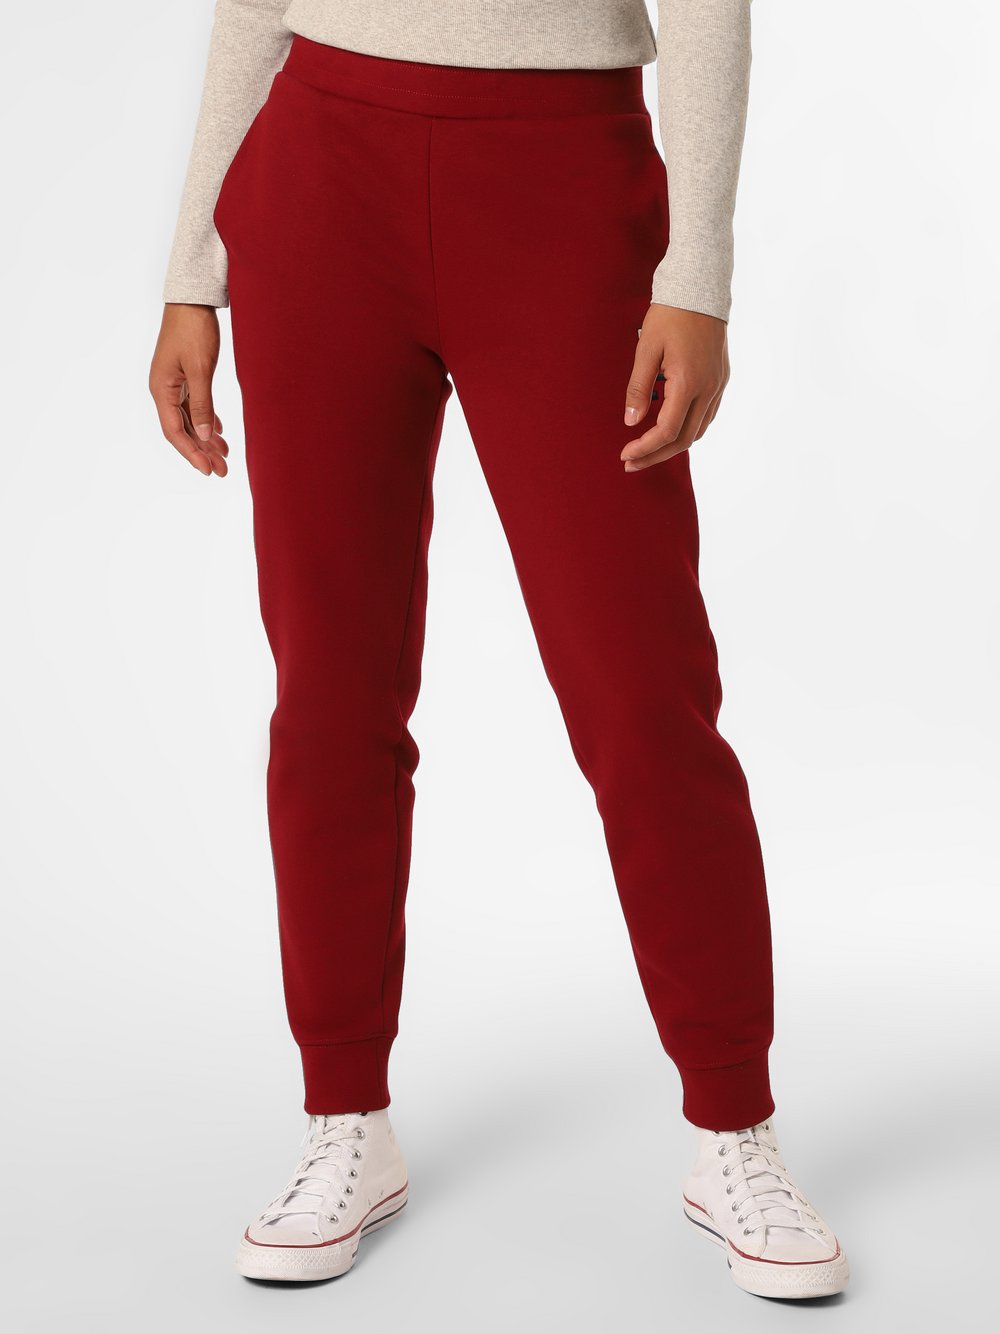 Tommy Hilfiger - Damskie spodnie dresowe, czerwony